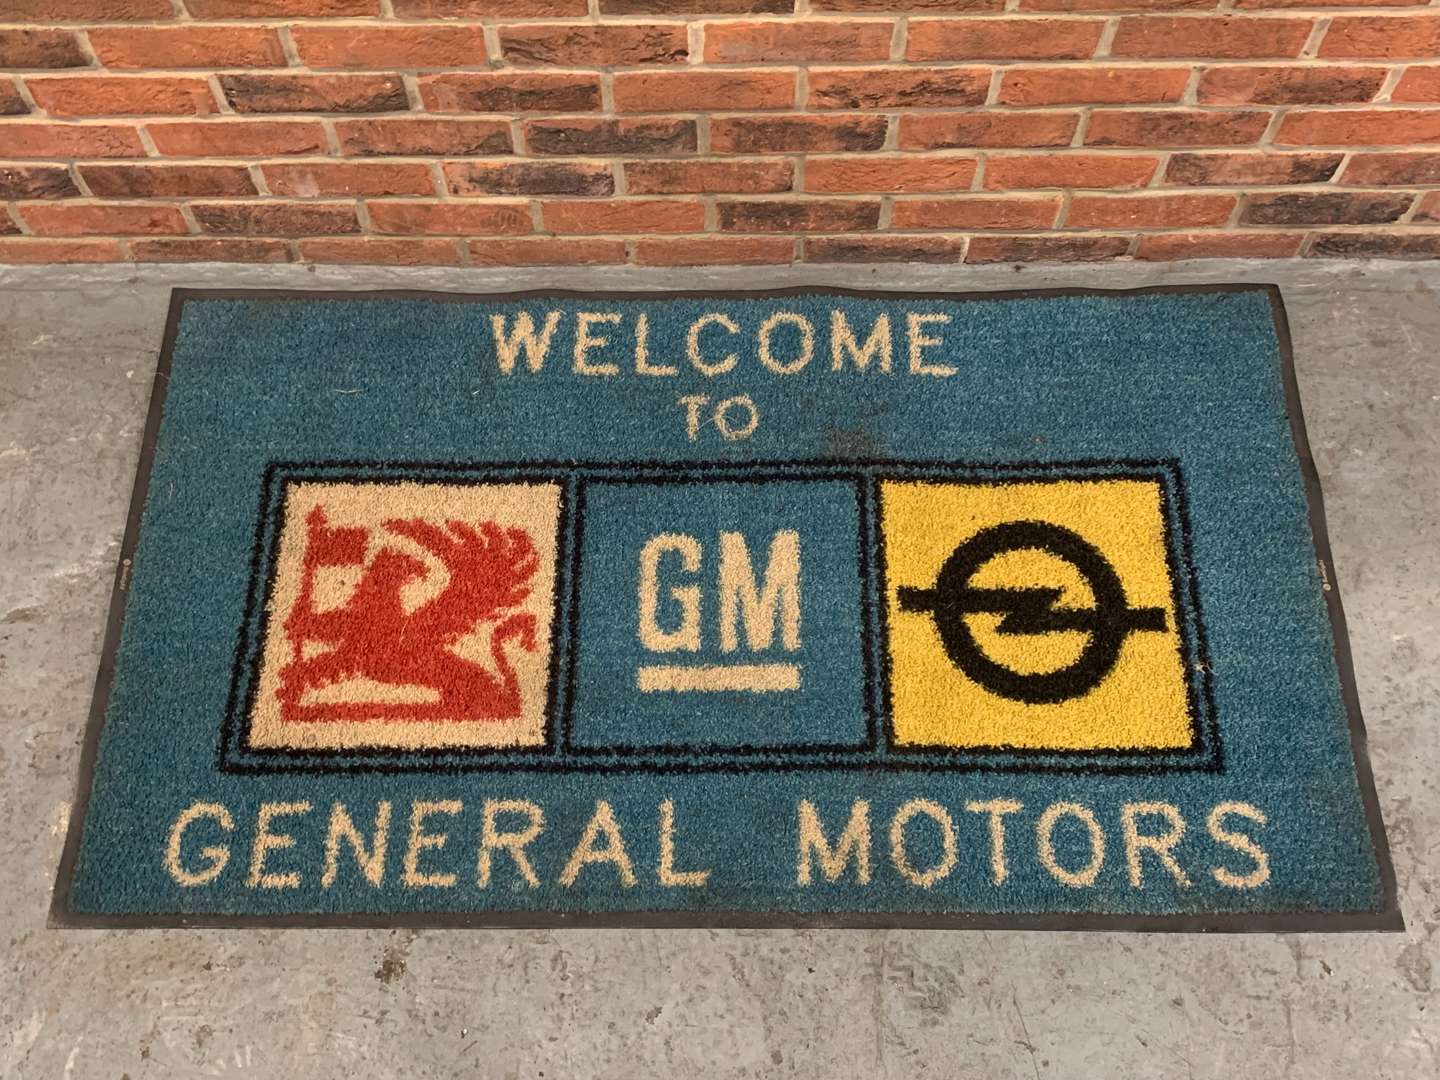 <p>Welcome to General Motors Floor Mat</p>